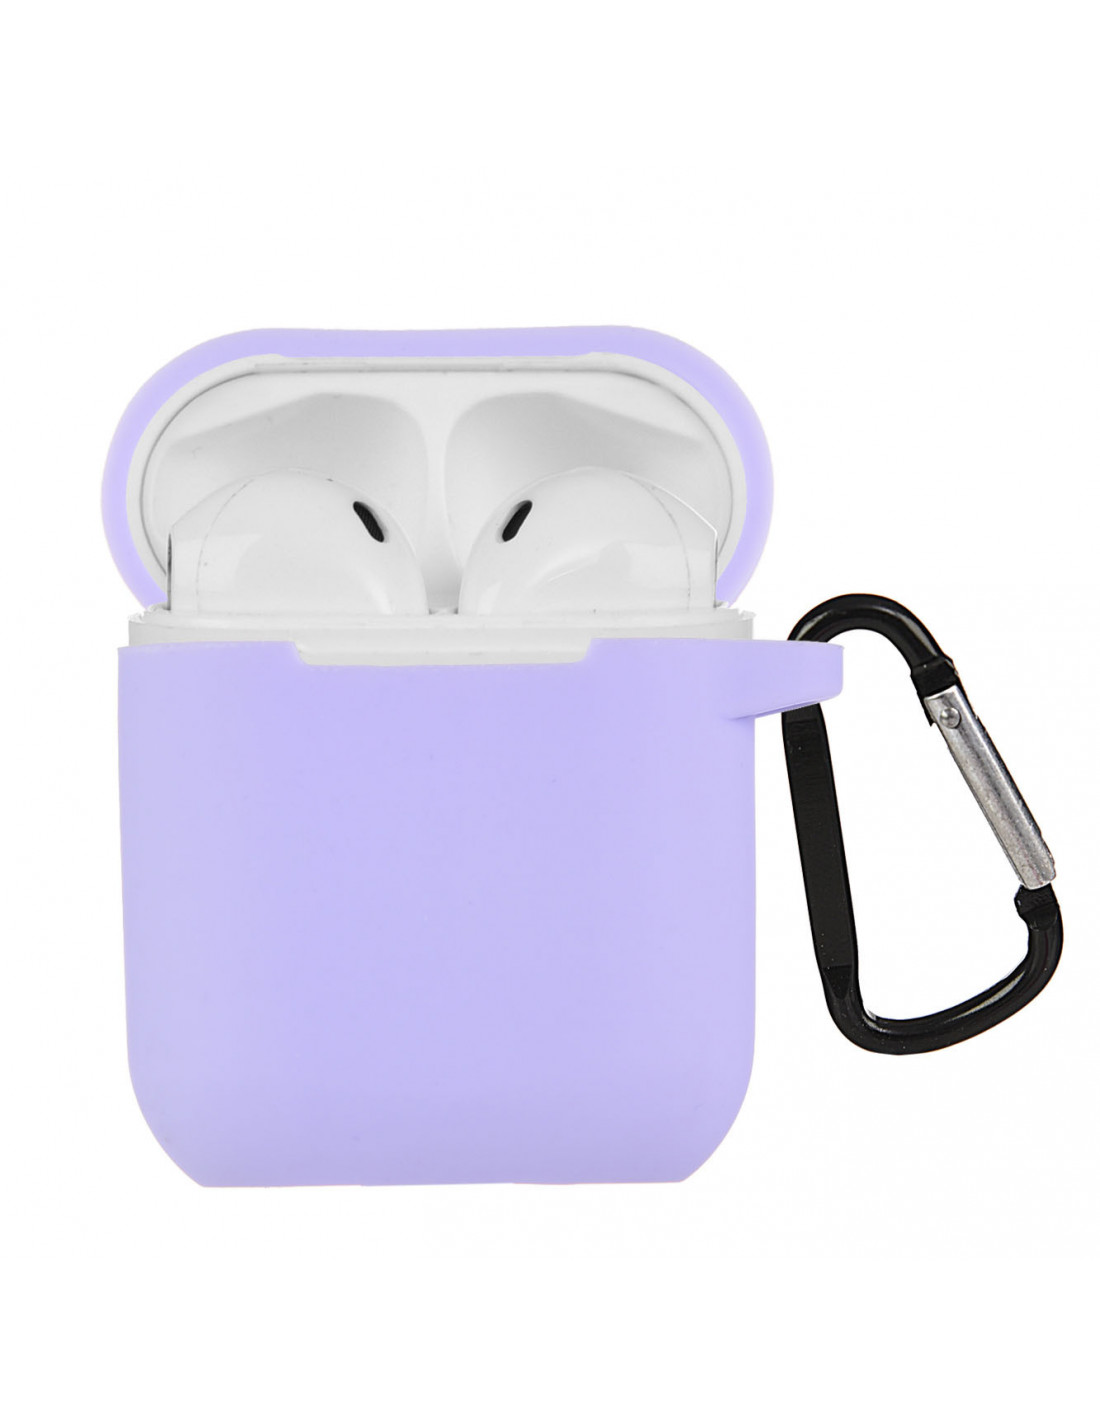 Estuche Para Airpods Audifonos Auriculares Apple 1 Y 2 Luz LED Protector  Case